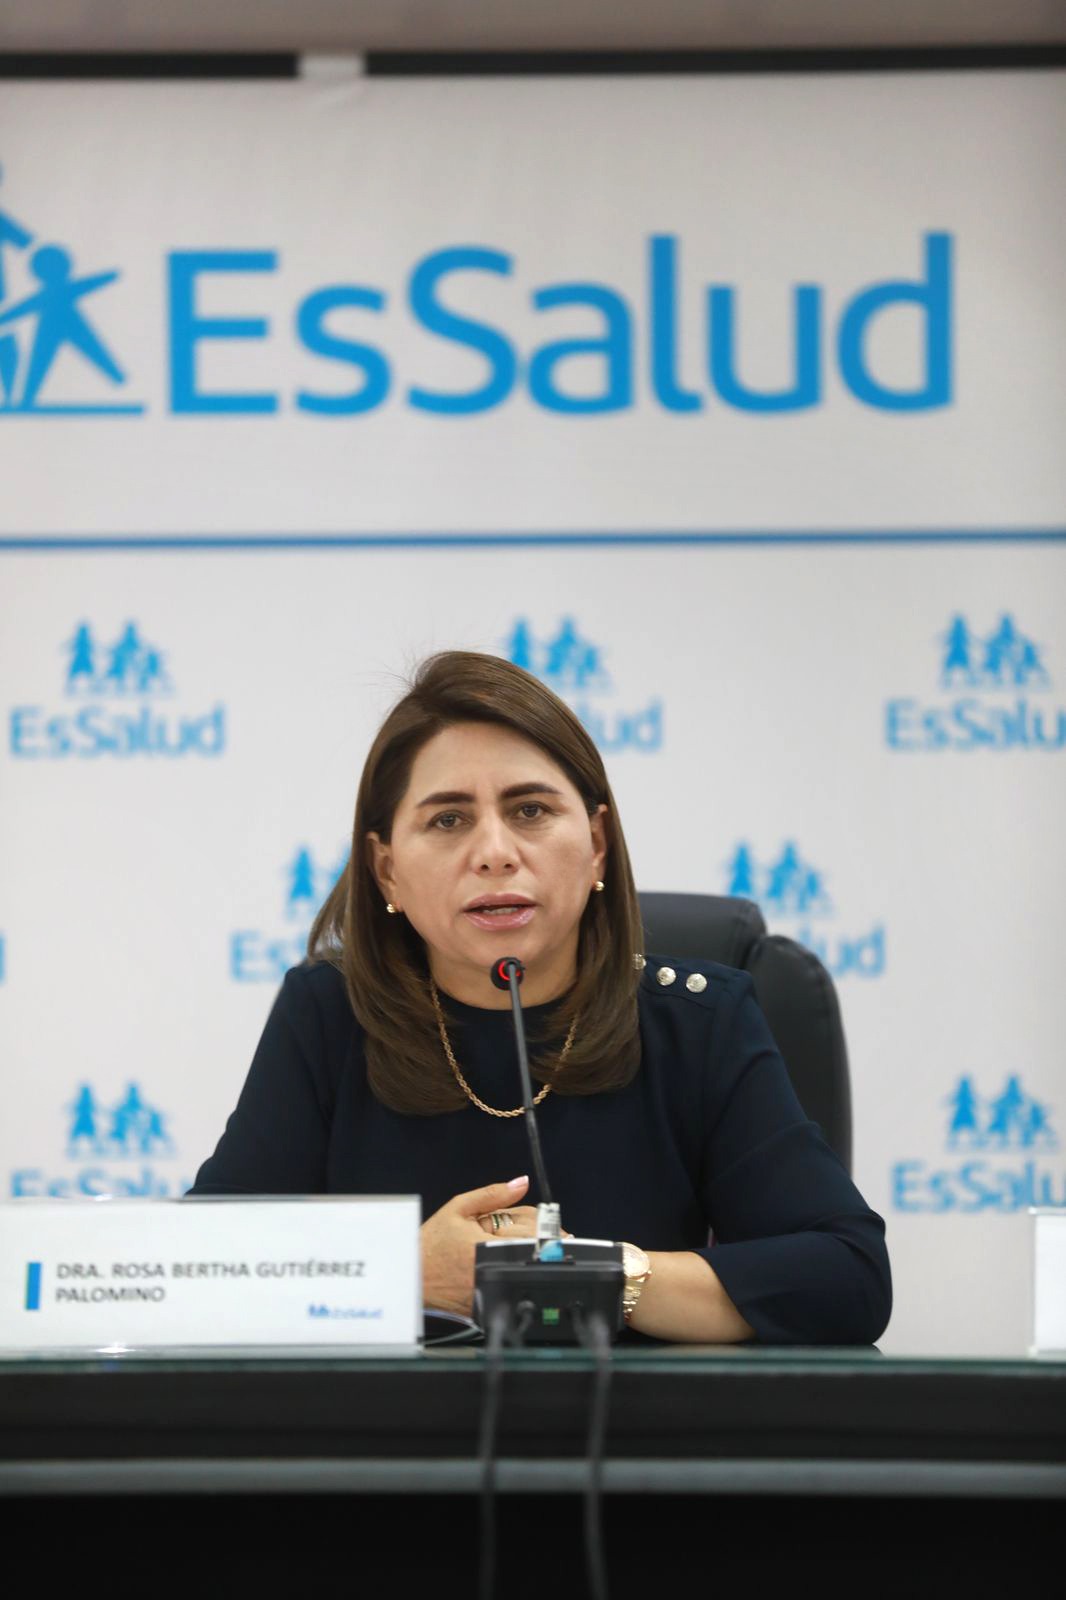 Congresistas piden renuncia irrevocable de flamante presidenta de Essalud Rosa Gutierrez